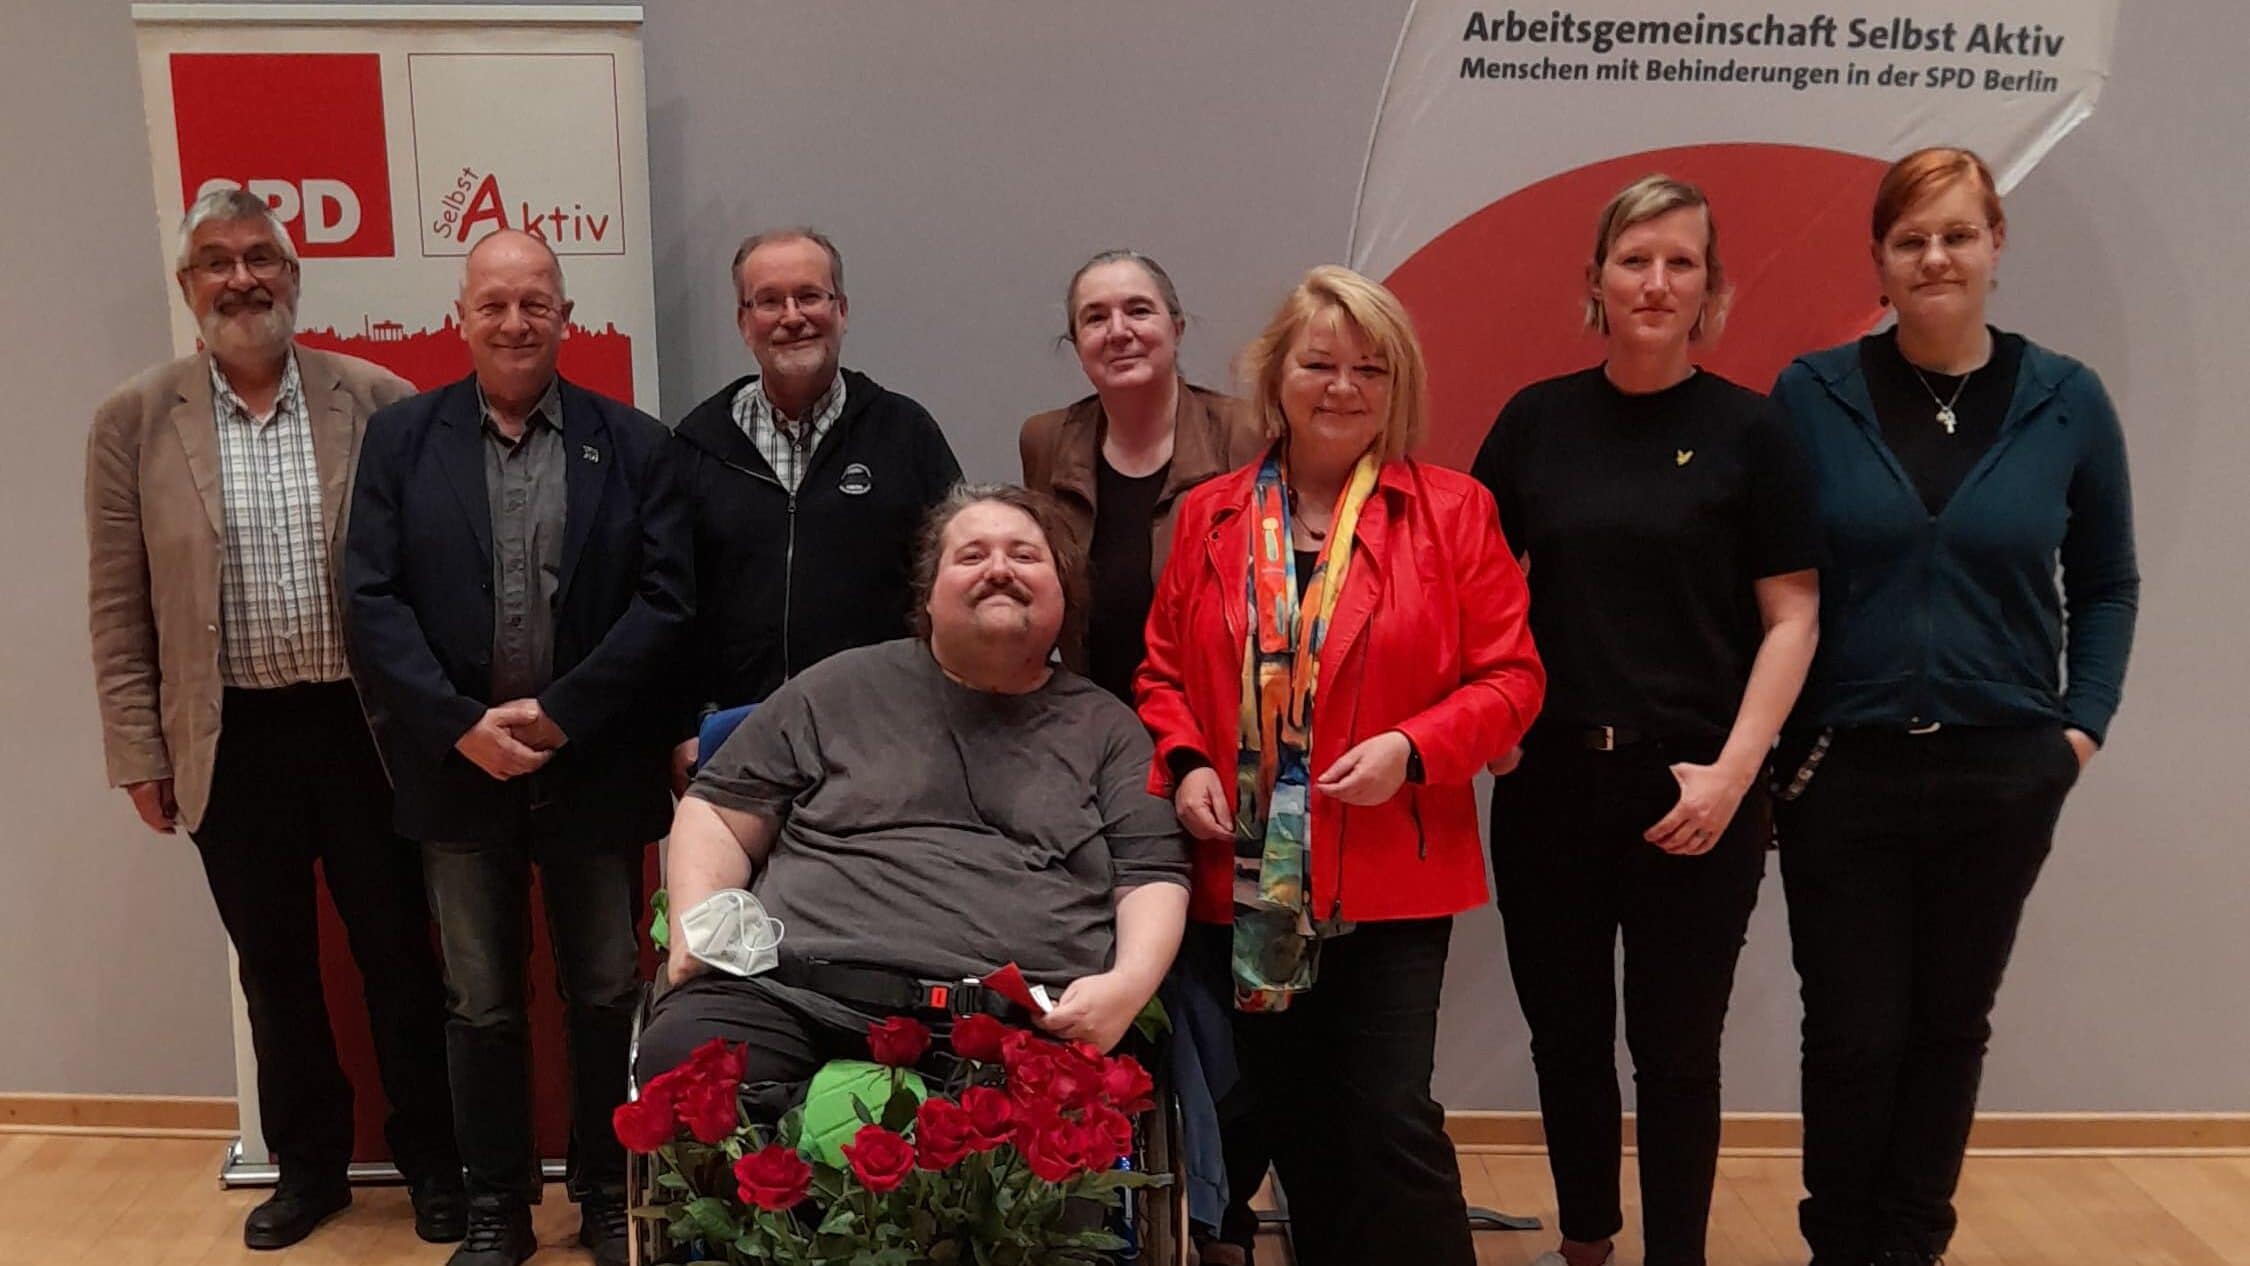 Arbeitsgemeinschaft Selbst Aktiv - Menschen mit Behinderungen in der SPD 2